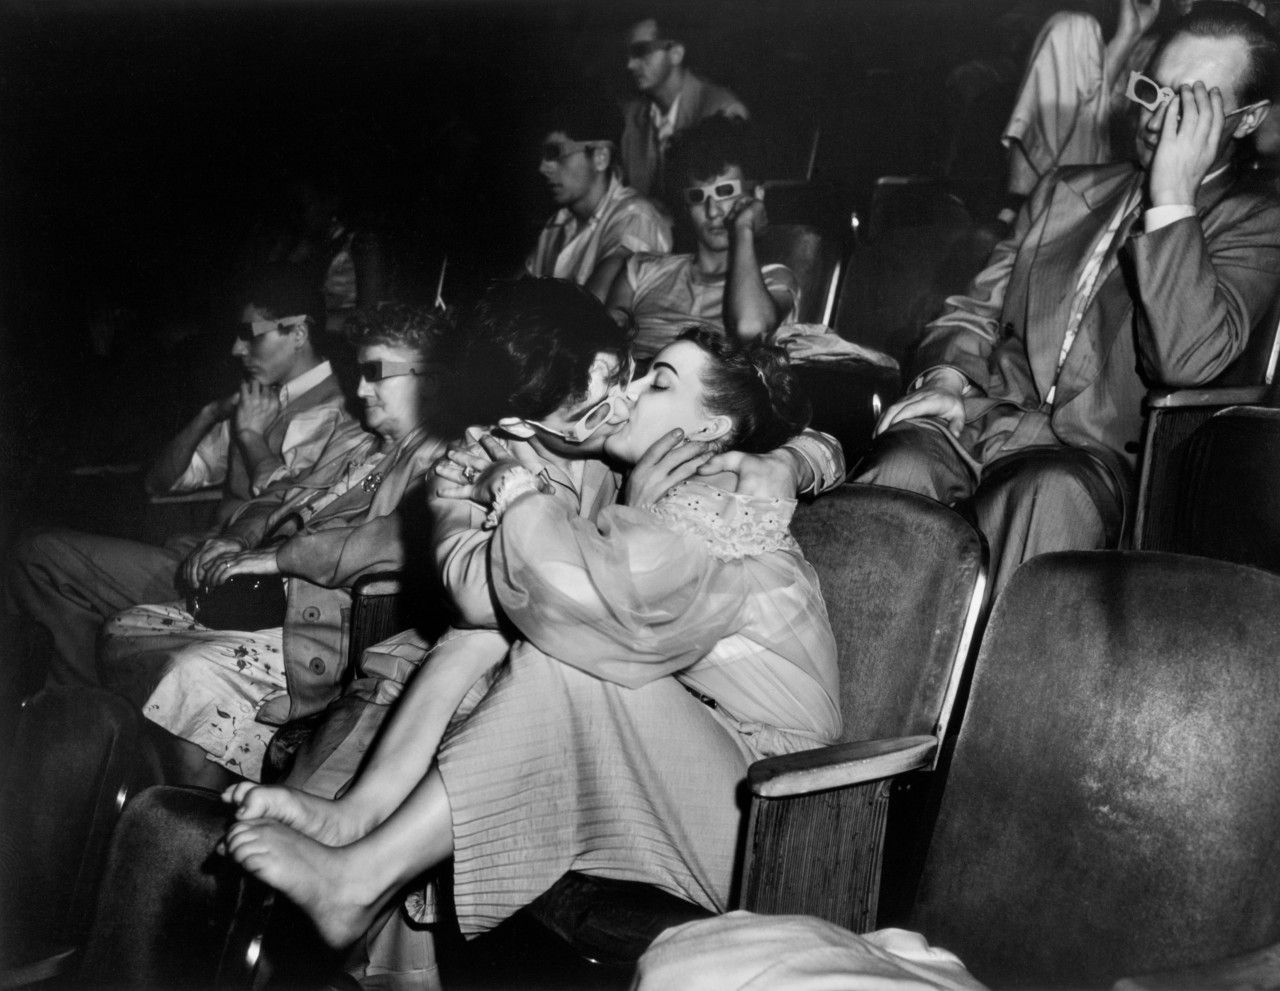 L’altra faccia del cinema americano negli scatti di Weegee